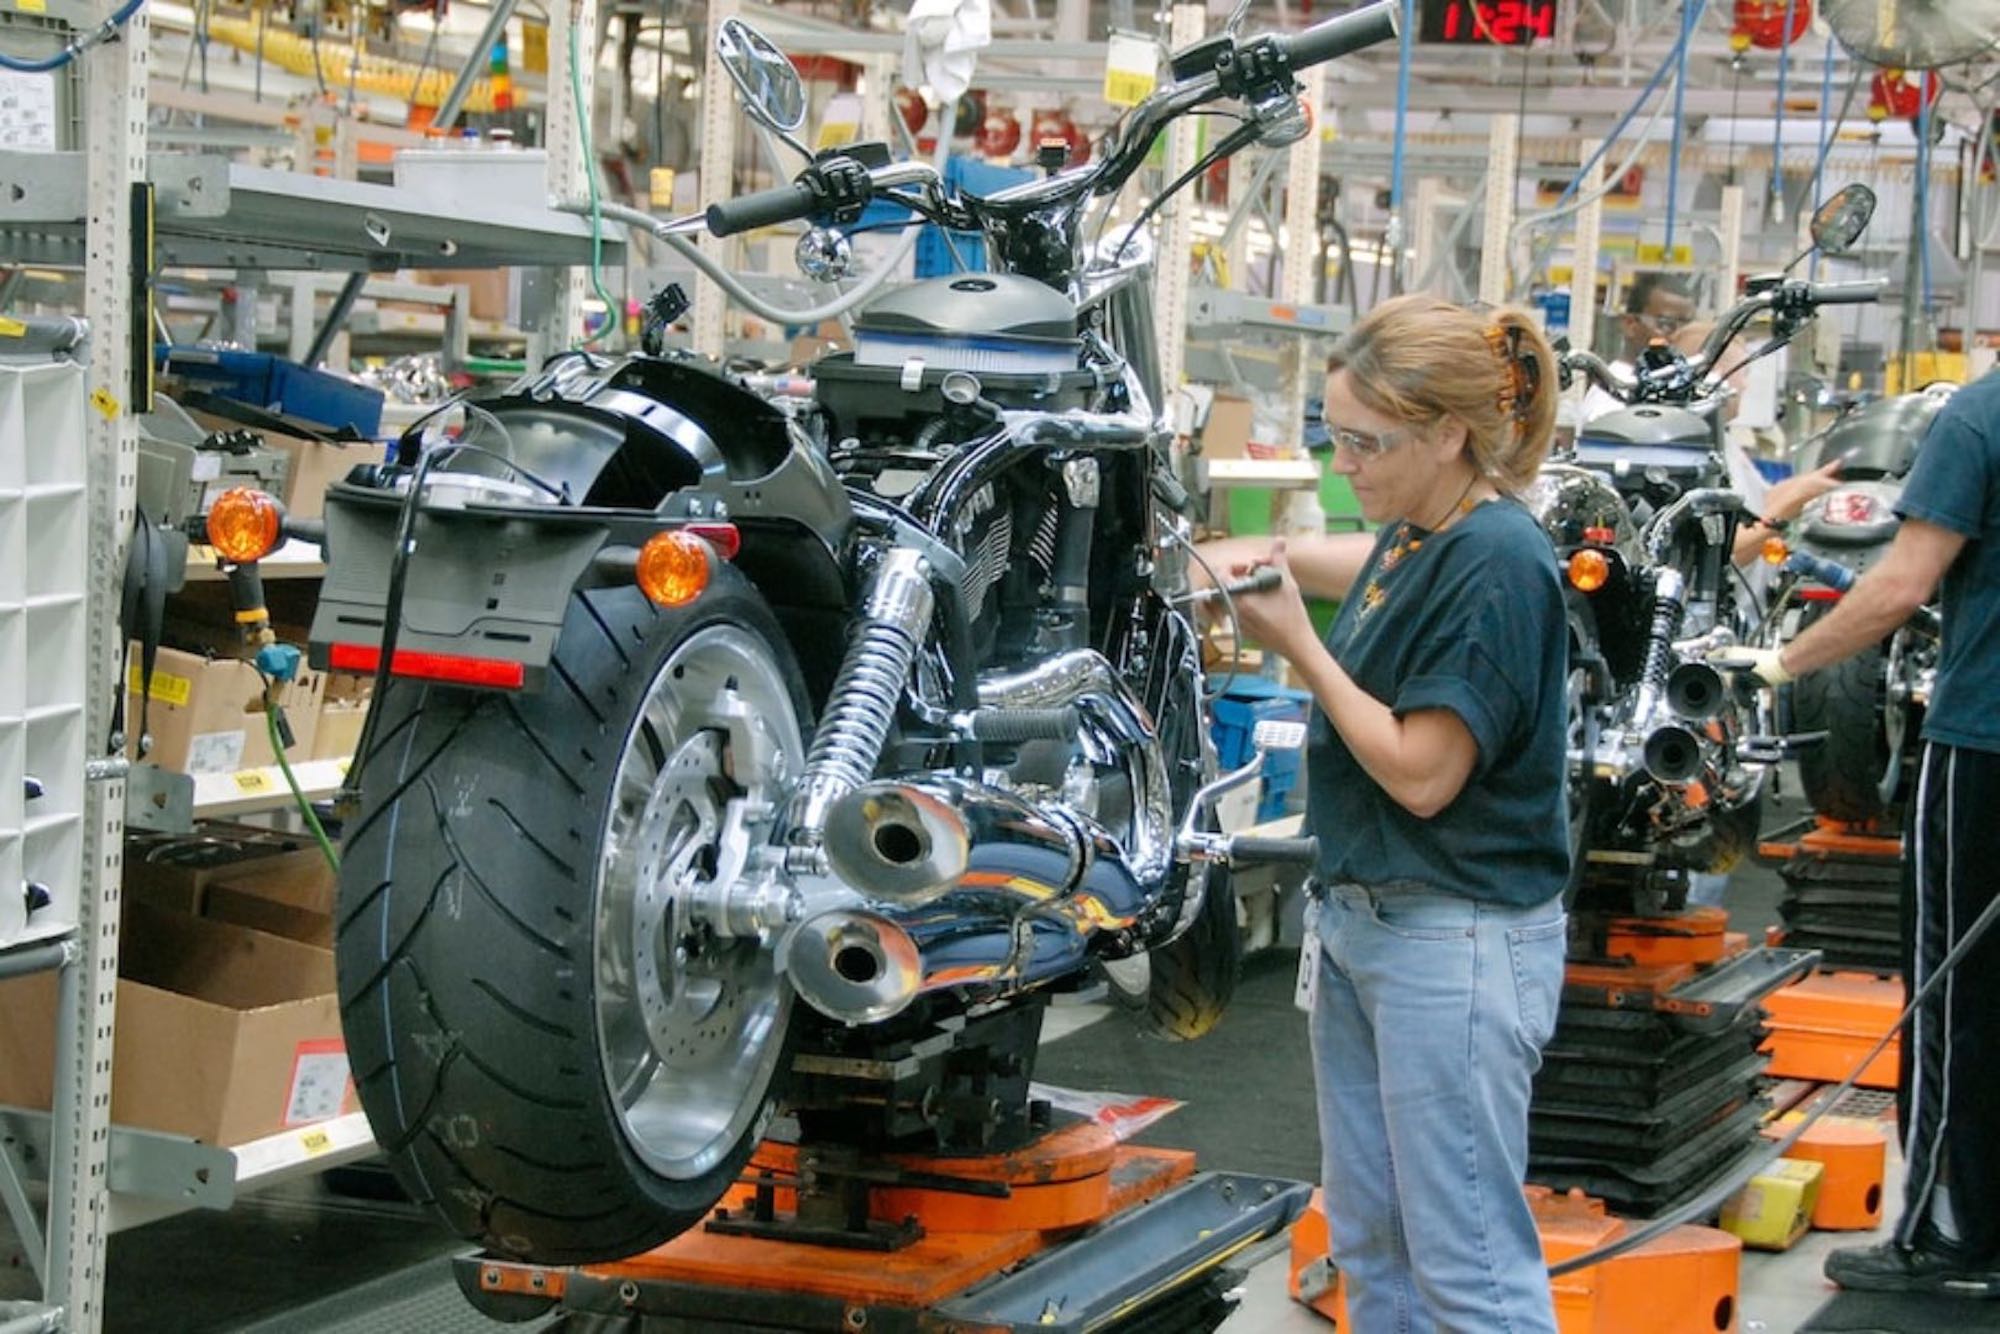 一名女性在Harley-Davidson生产工厂装配线中工作。照片由终极摩托车提供。